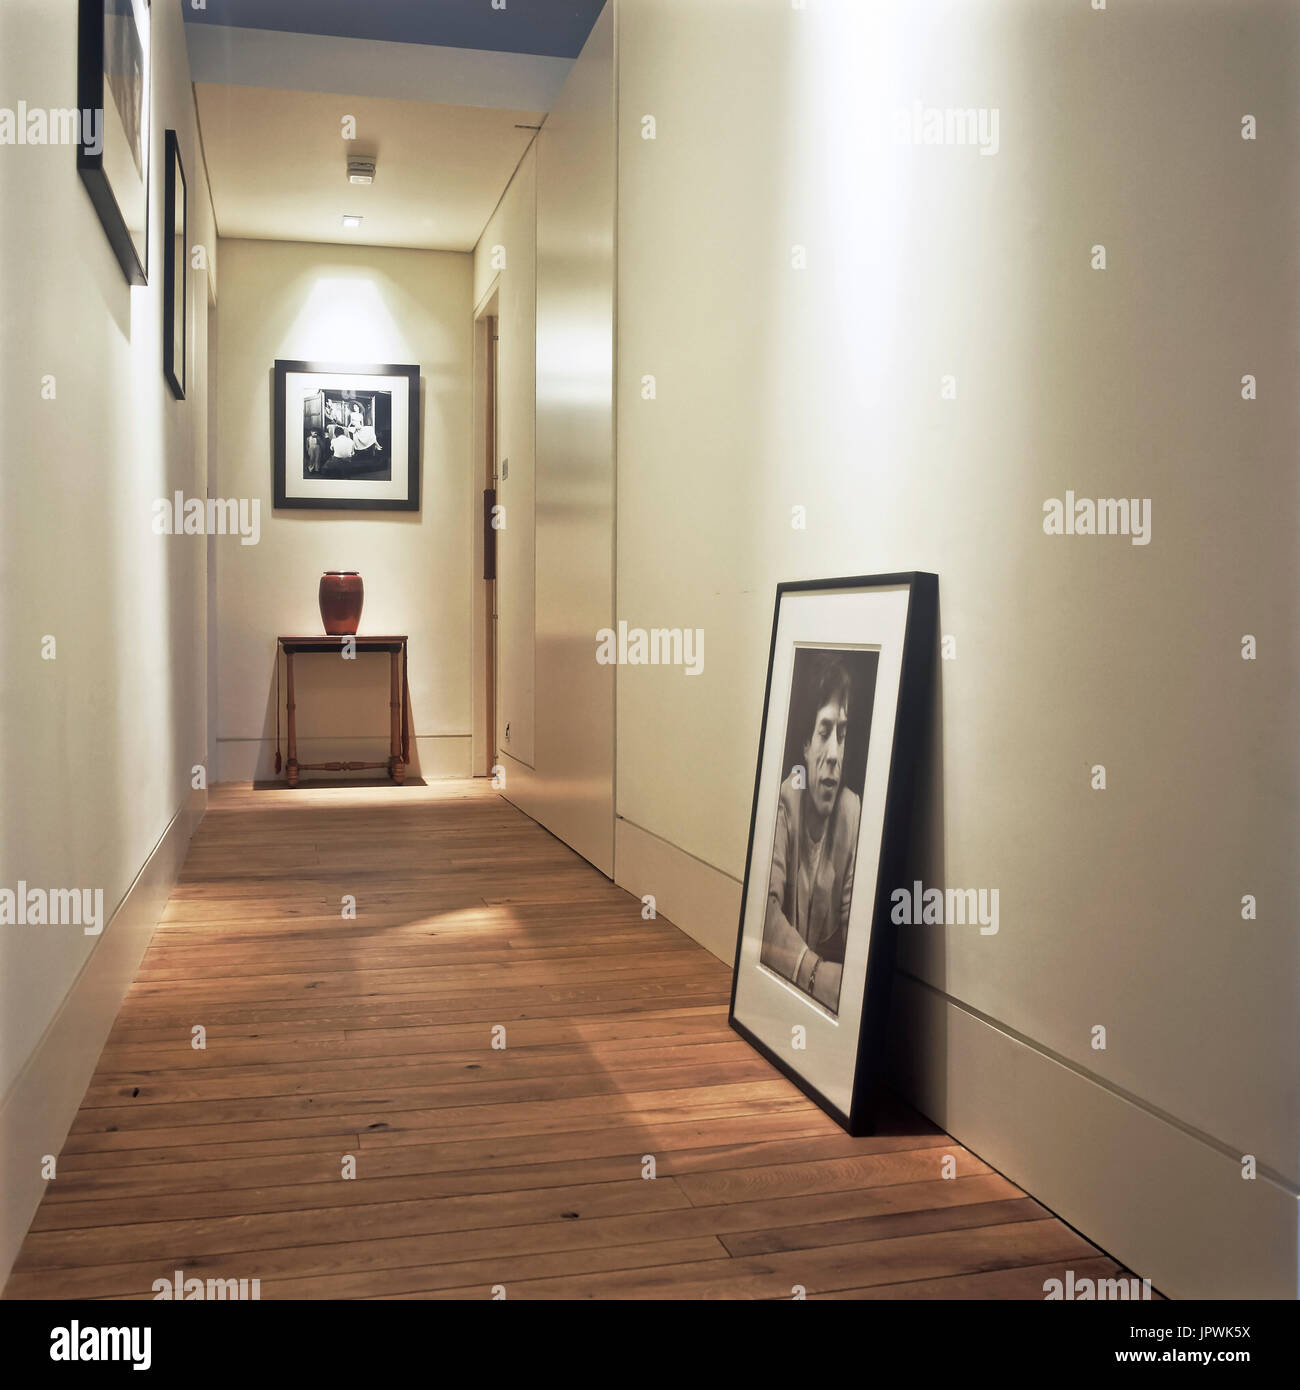 Minimalist style hallway Stock Photo